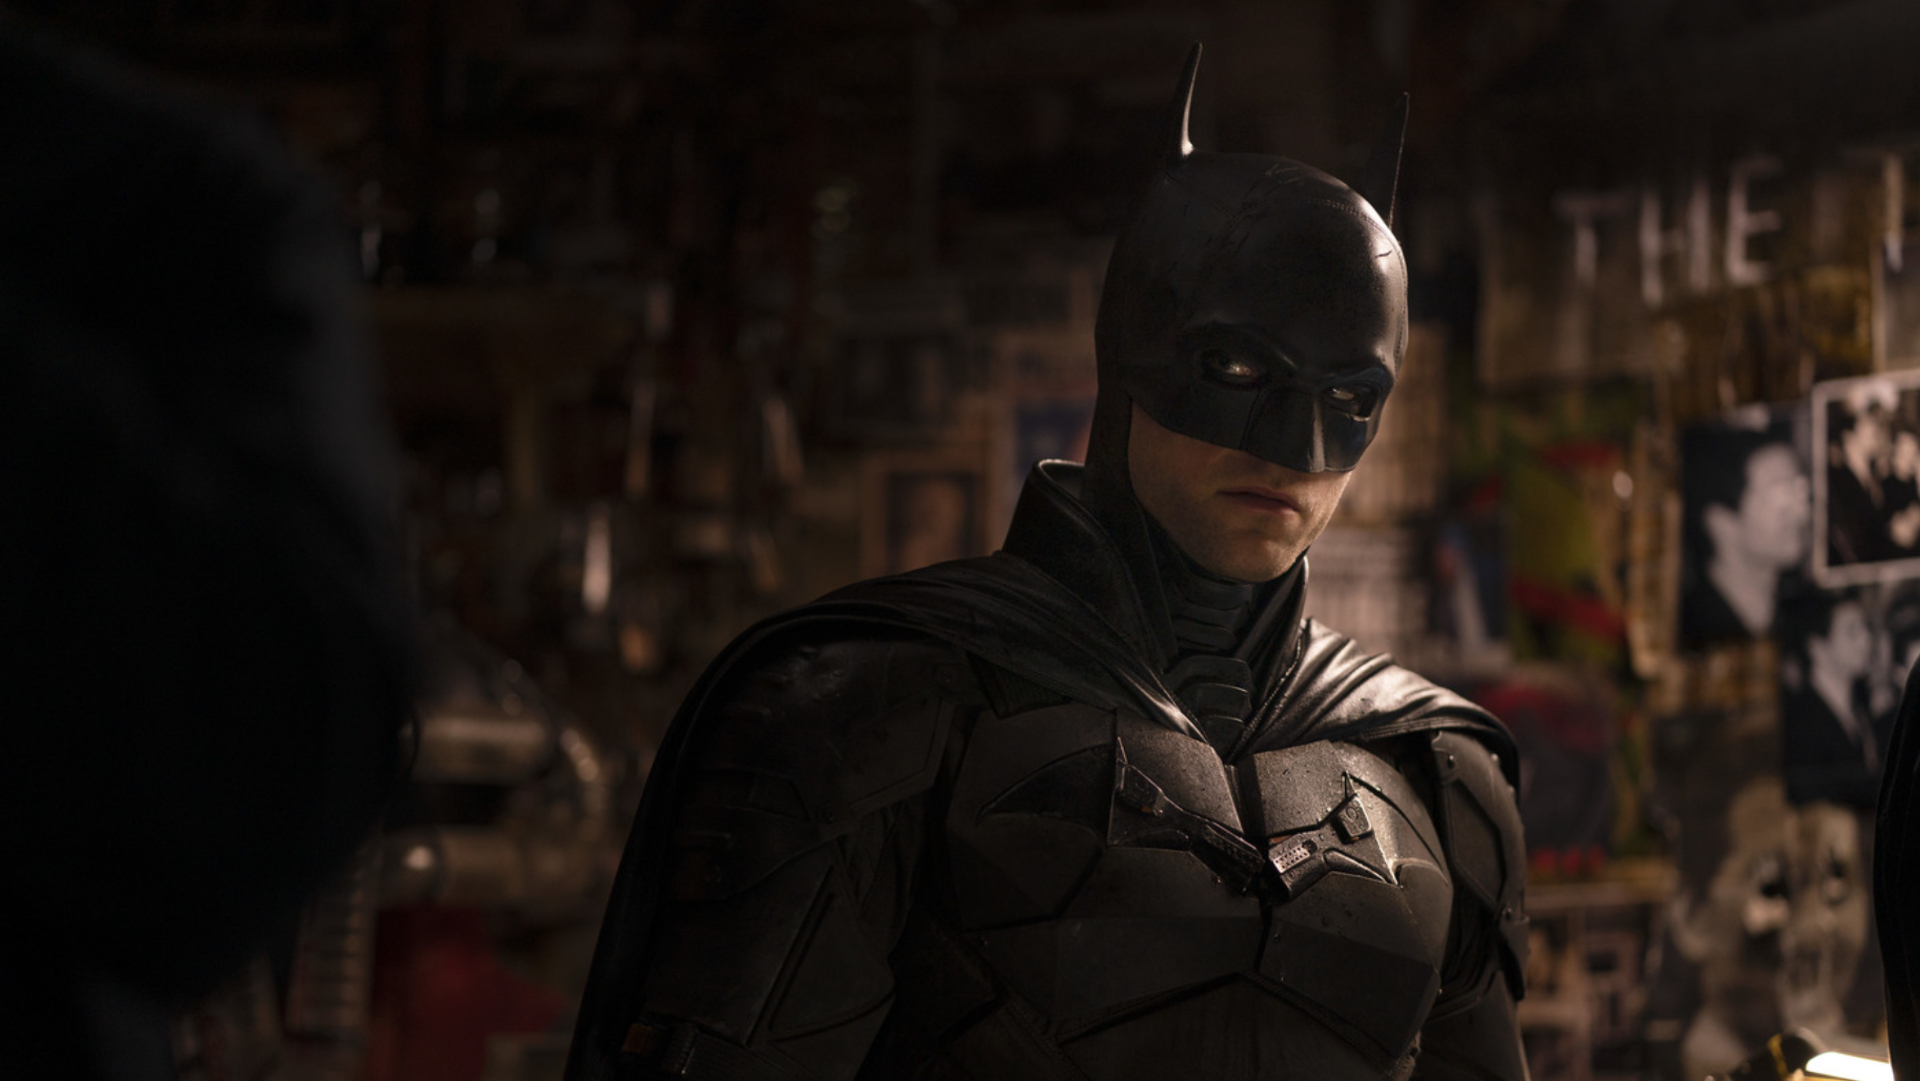 Robert Pattinson como Batman em uma cena de crime mal iluminada.